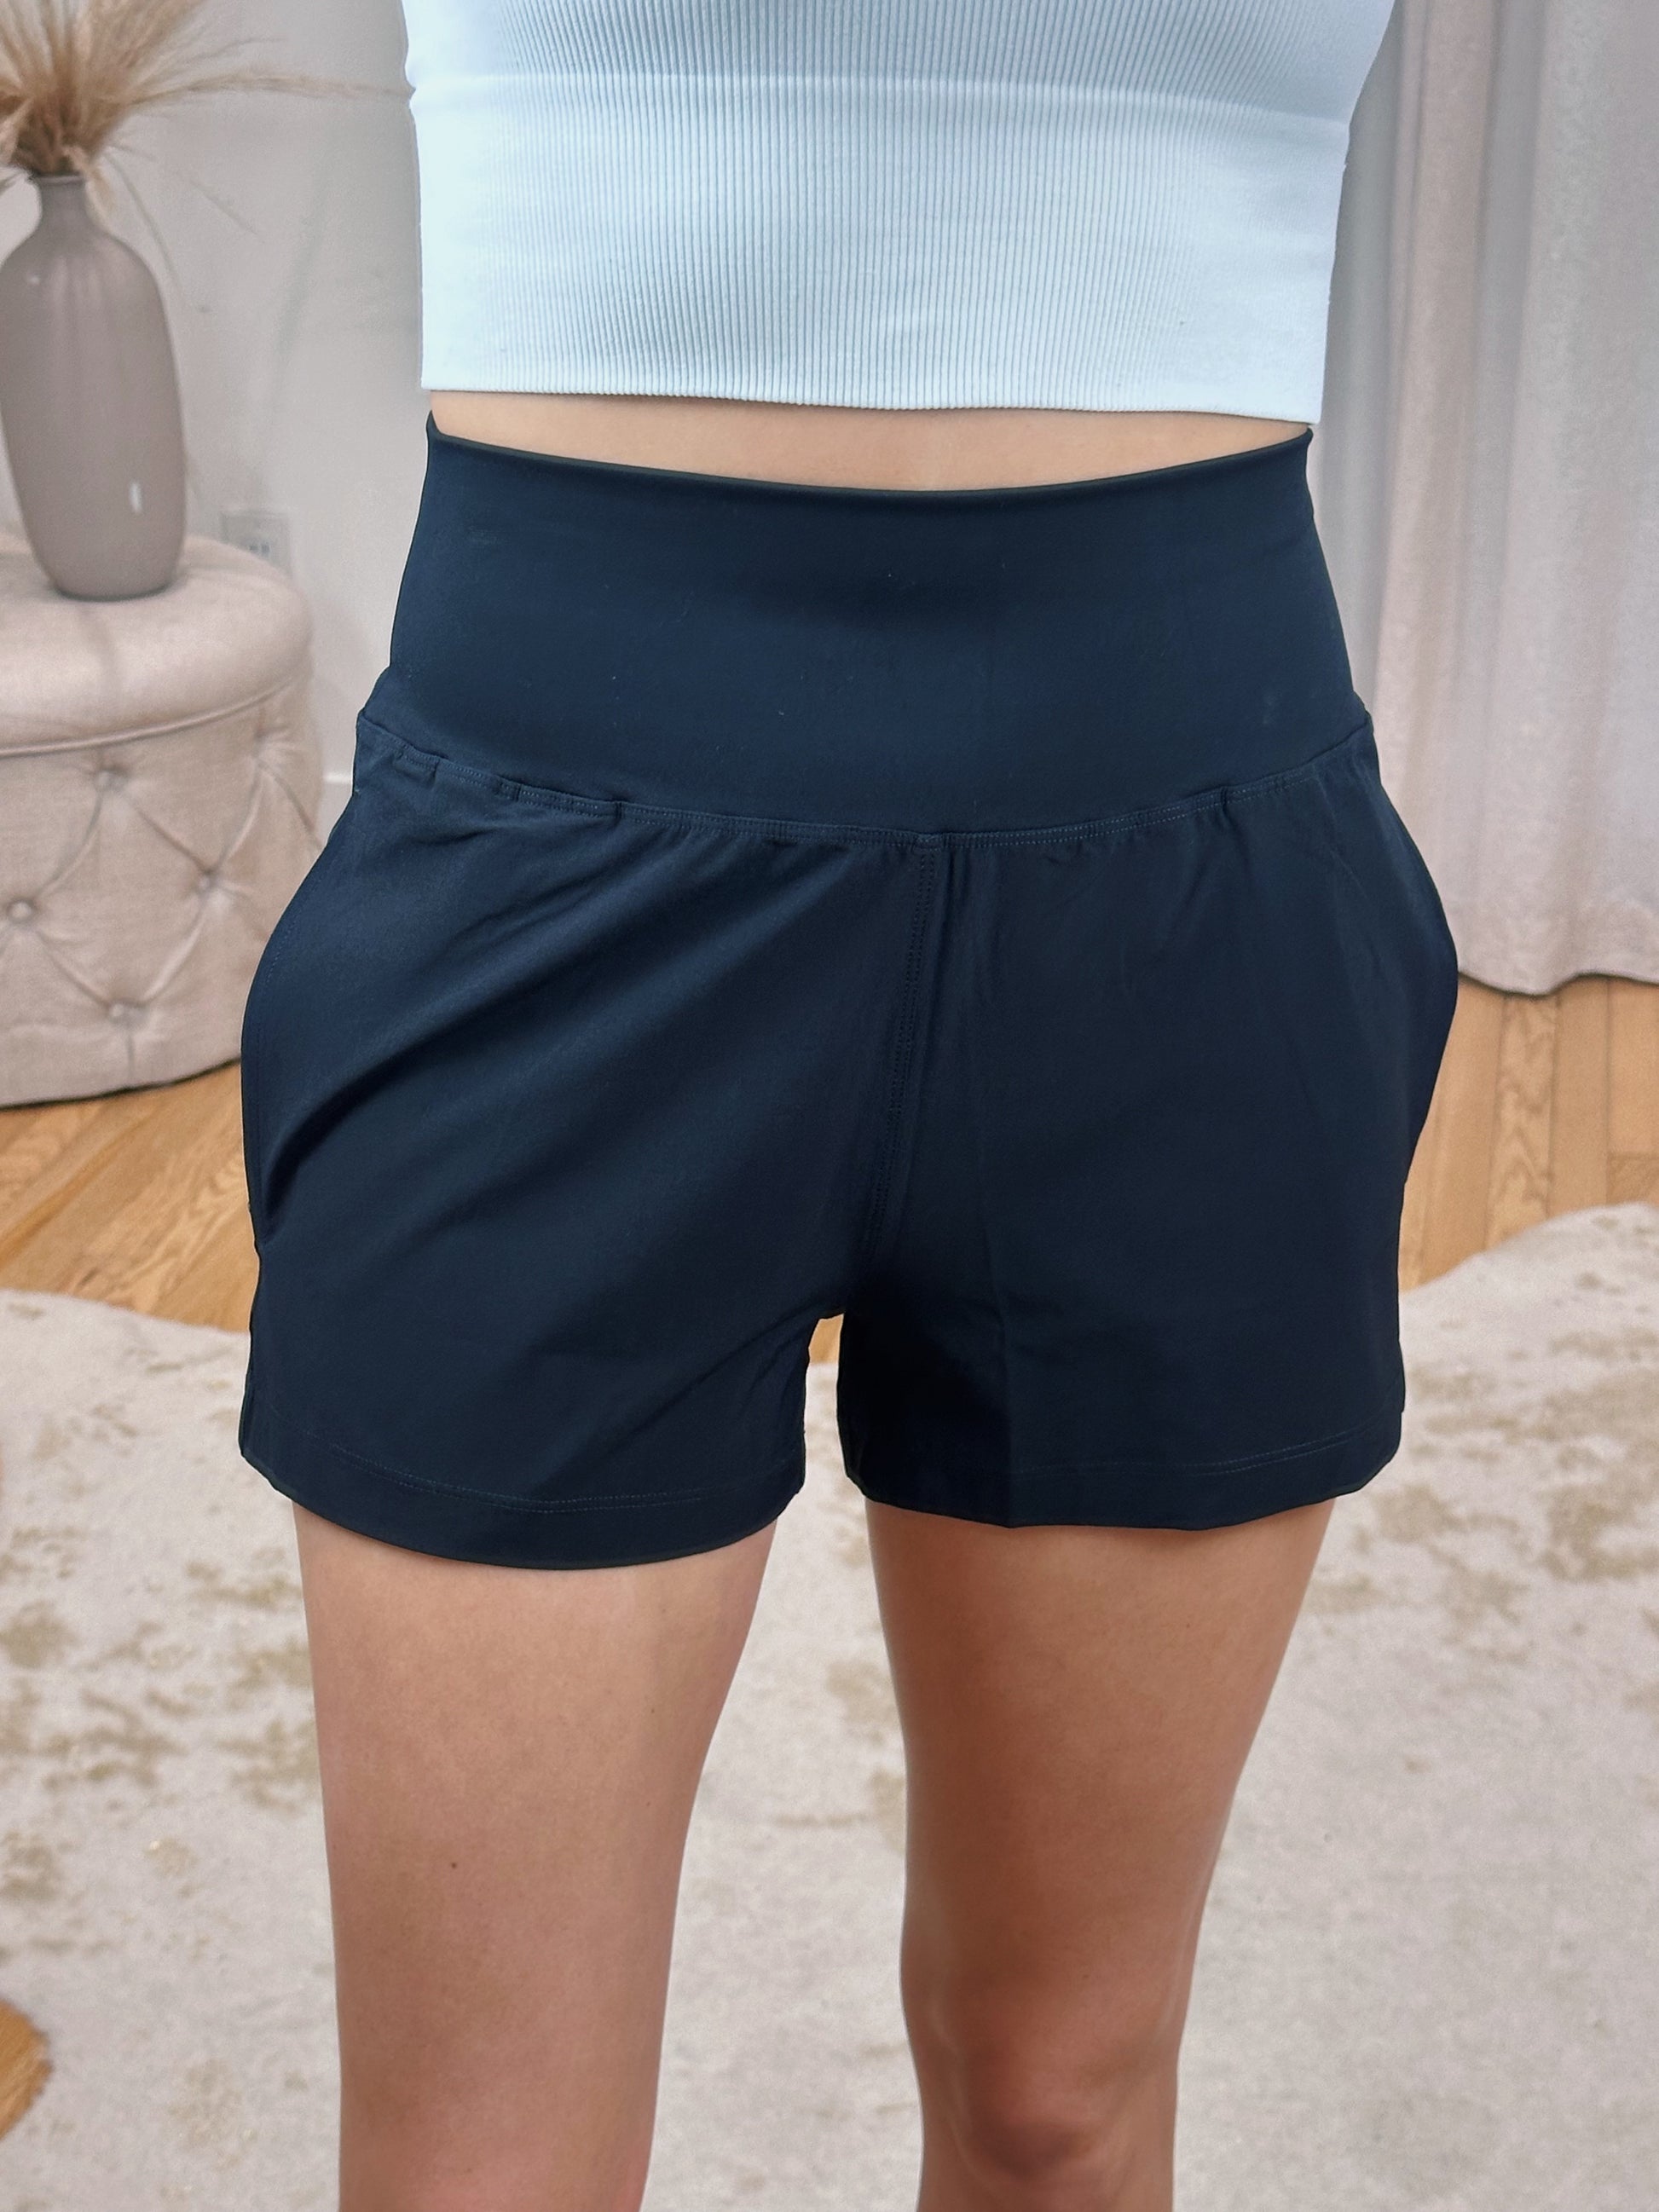 Comfort Shorts – Vyvacious